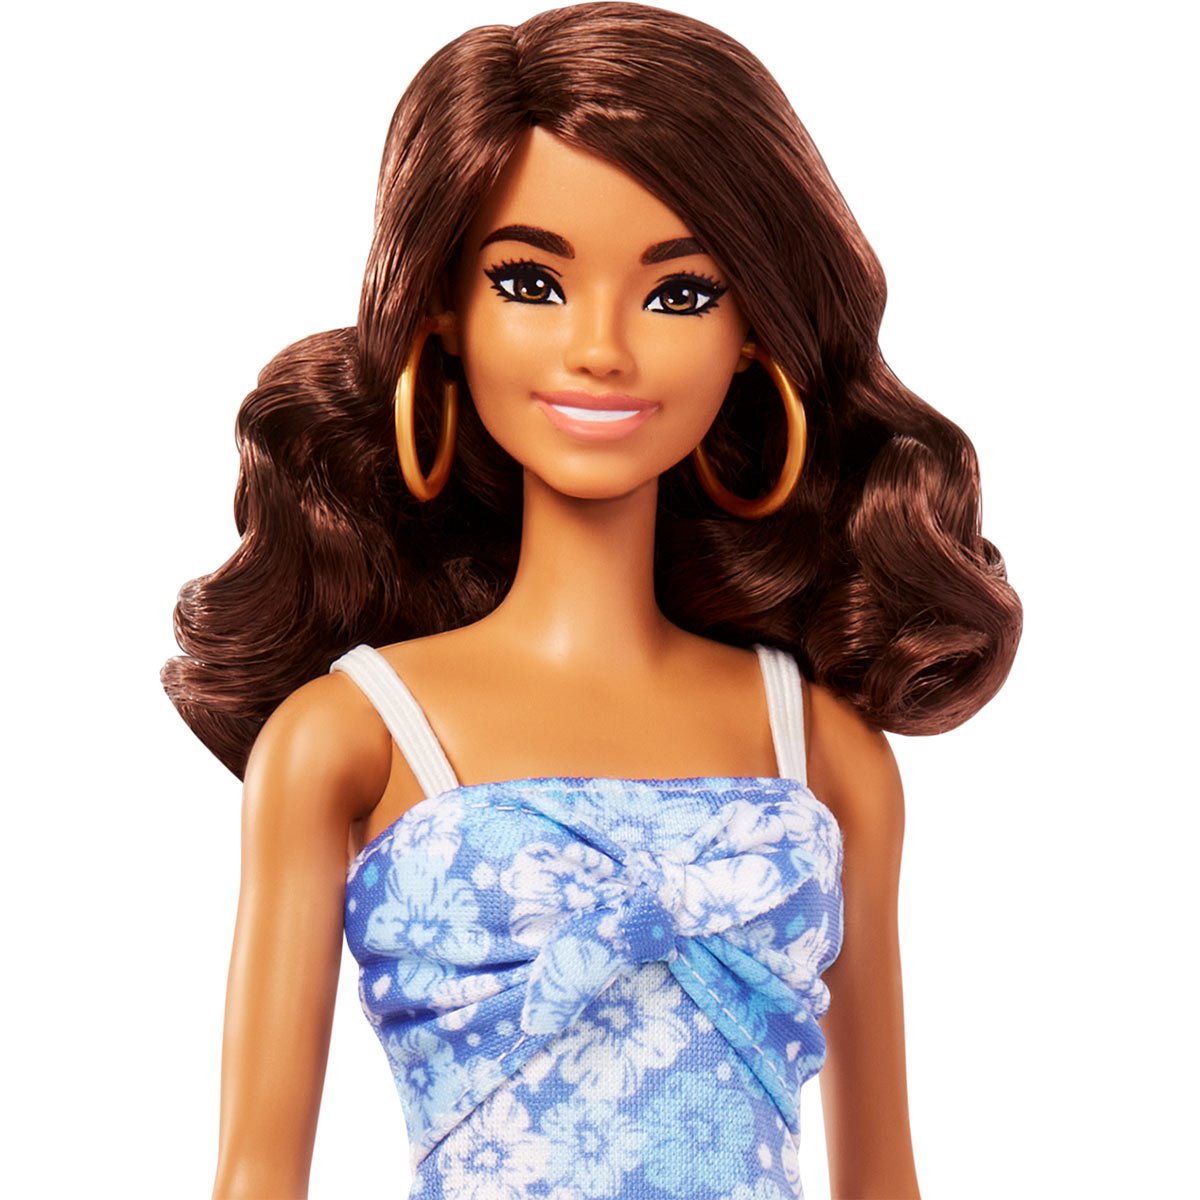  Barbie Dolls & Accessories Playset, Beach Boardwalk